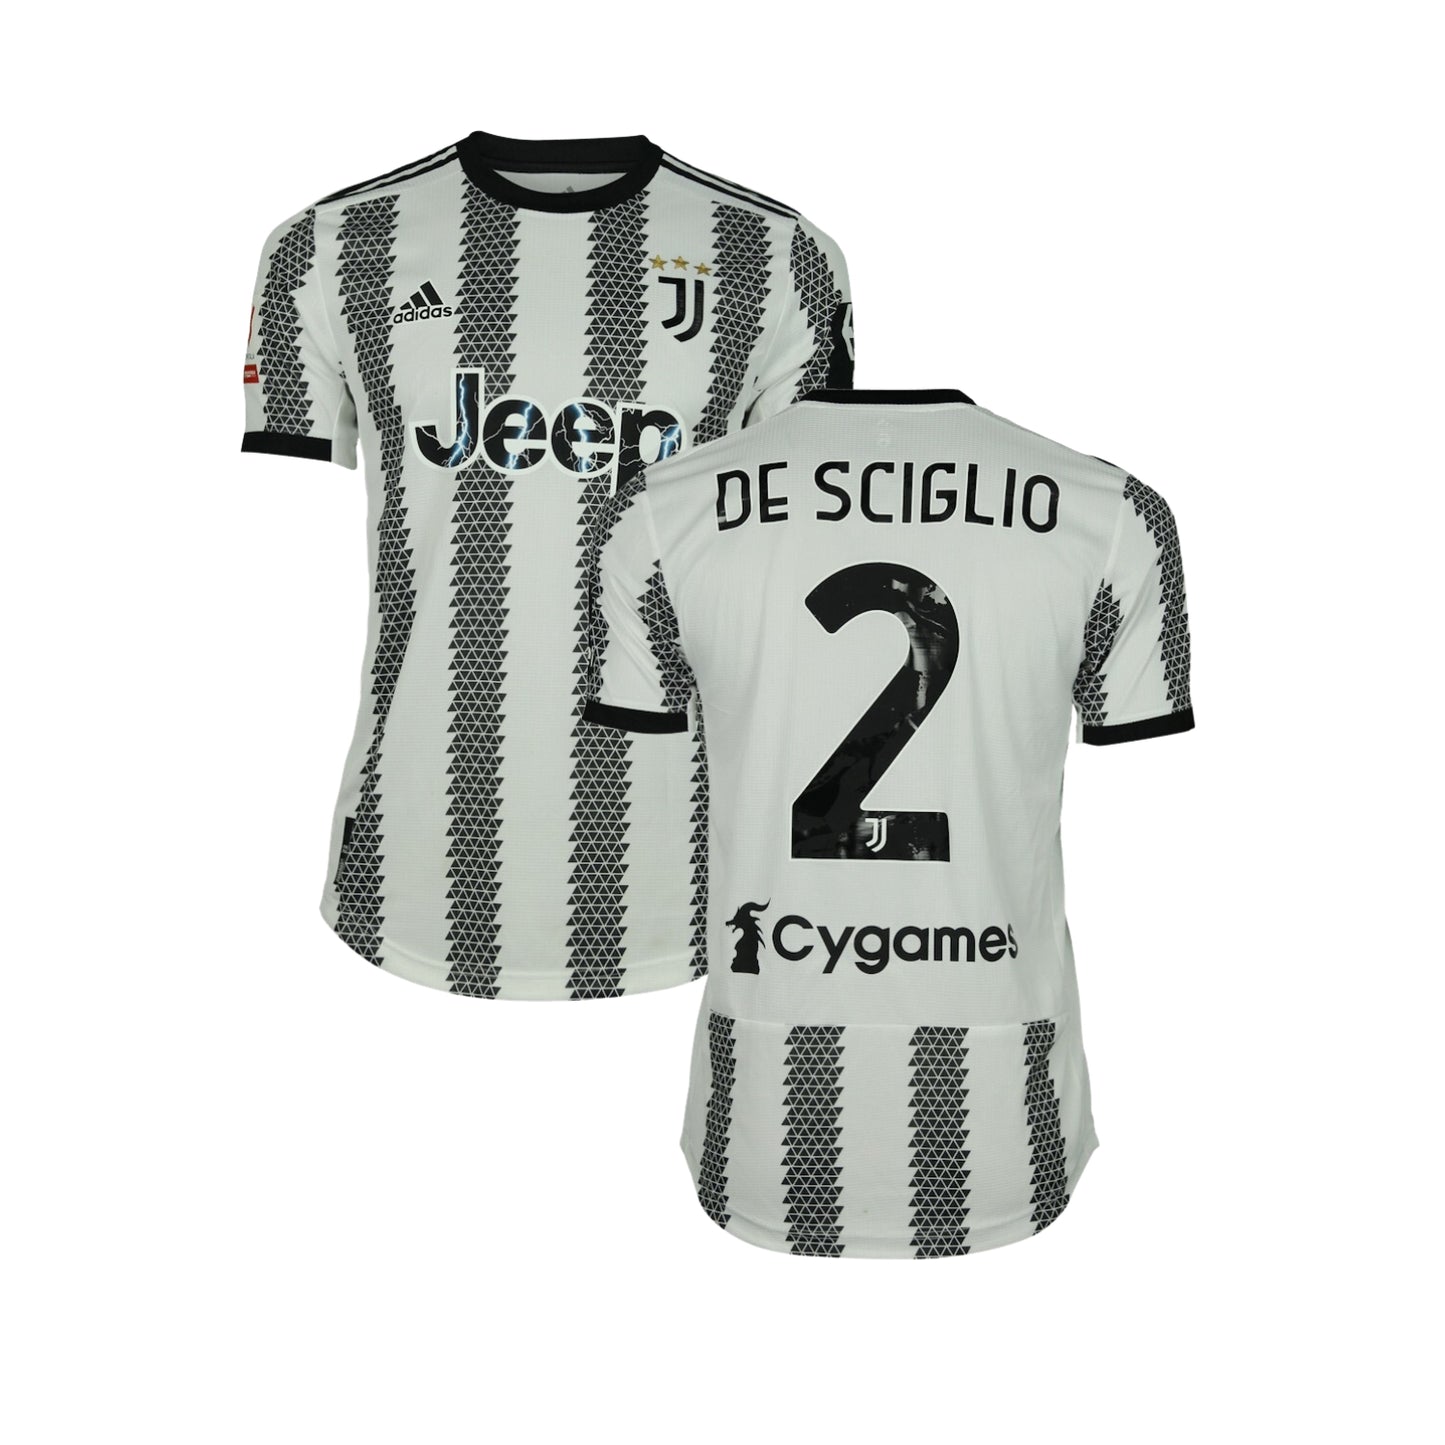 Mattia De Sciglio Juventus 2 Jersey